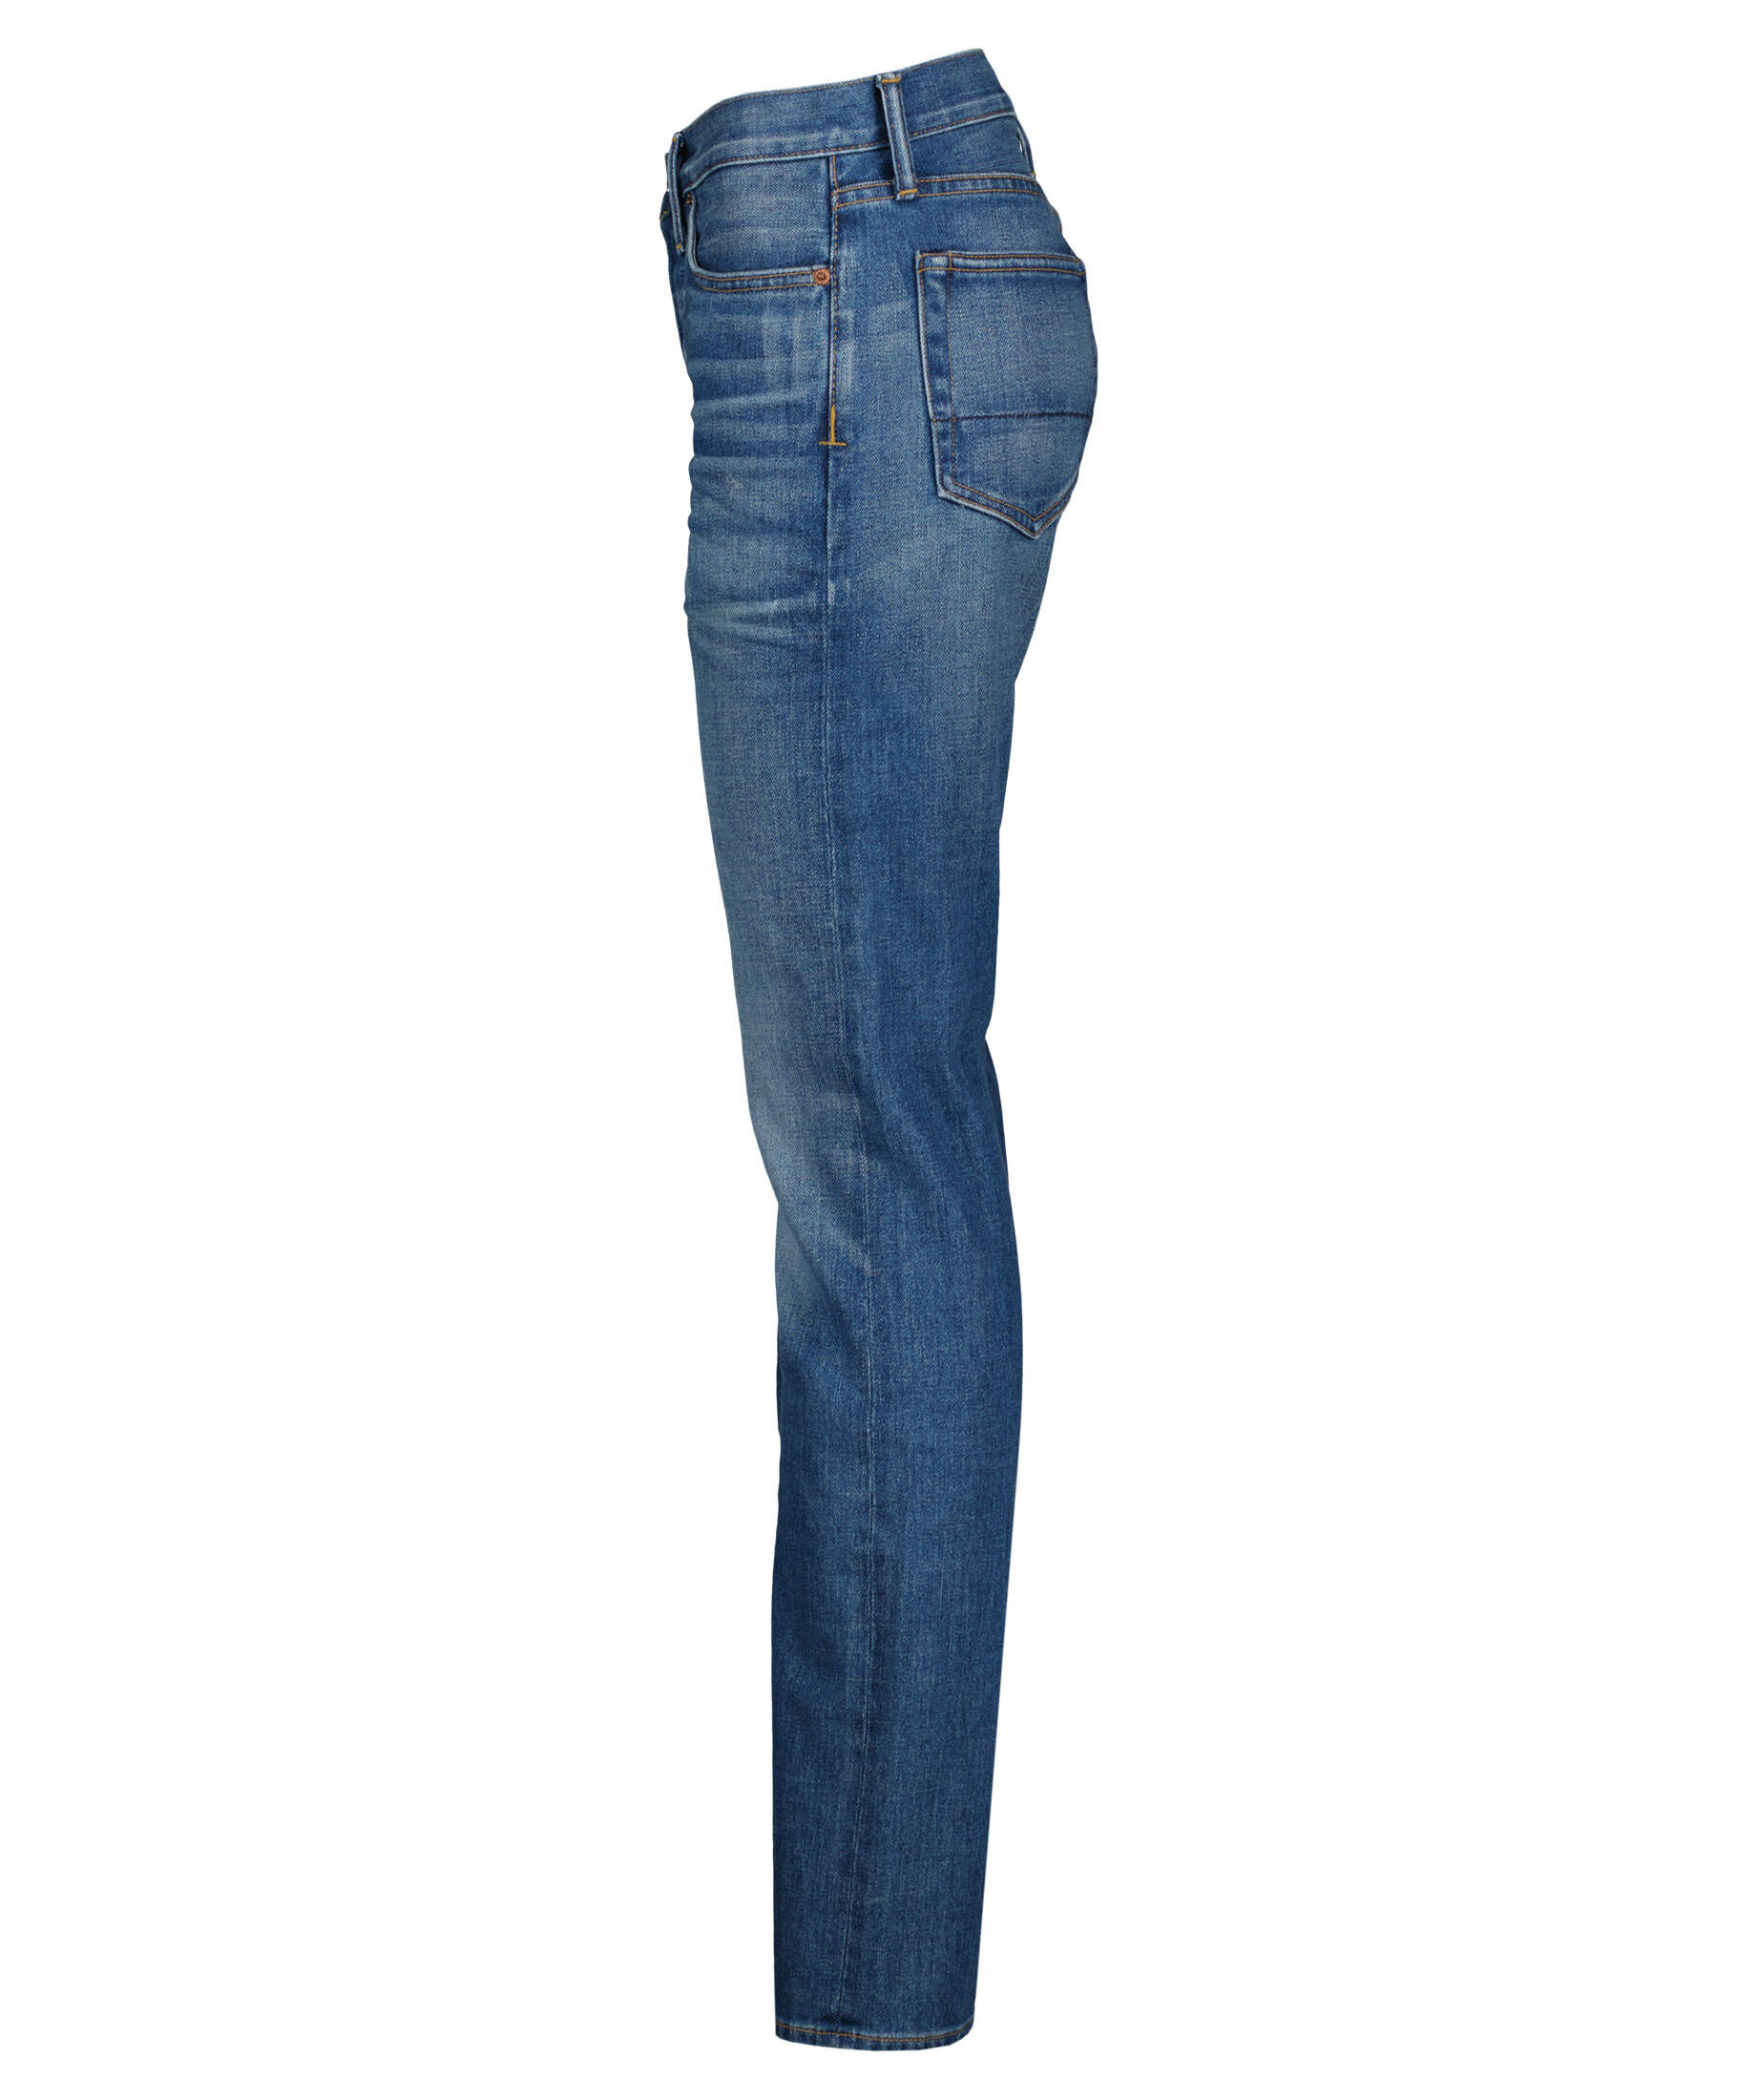 Herren Bekleidung Jeans Jeans mit Gerader Passform Tom Ford Andere materialien jacke in Blau für Herren 